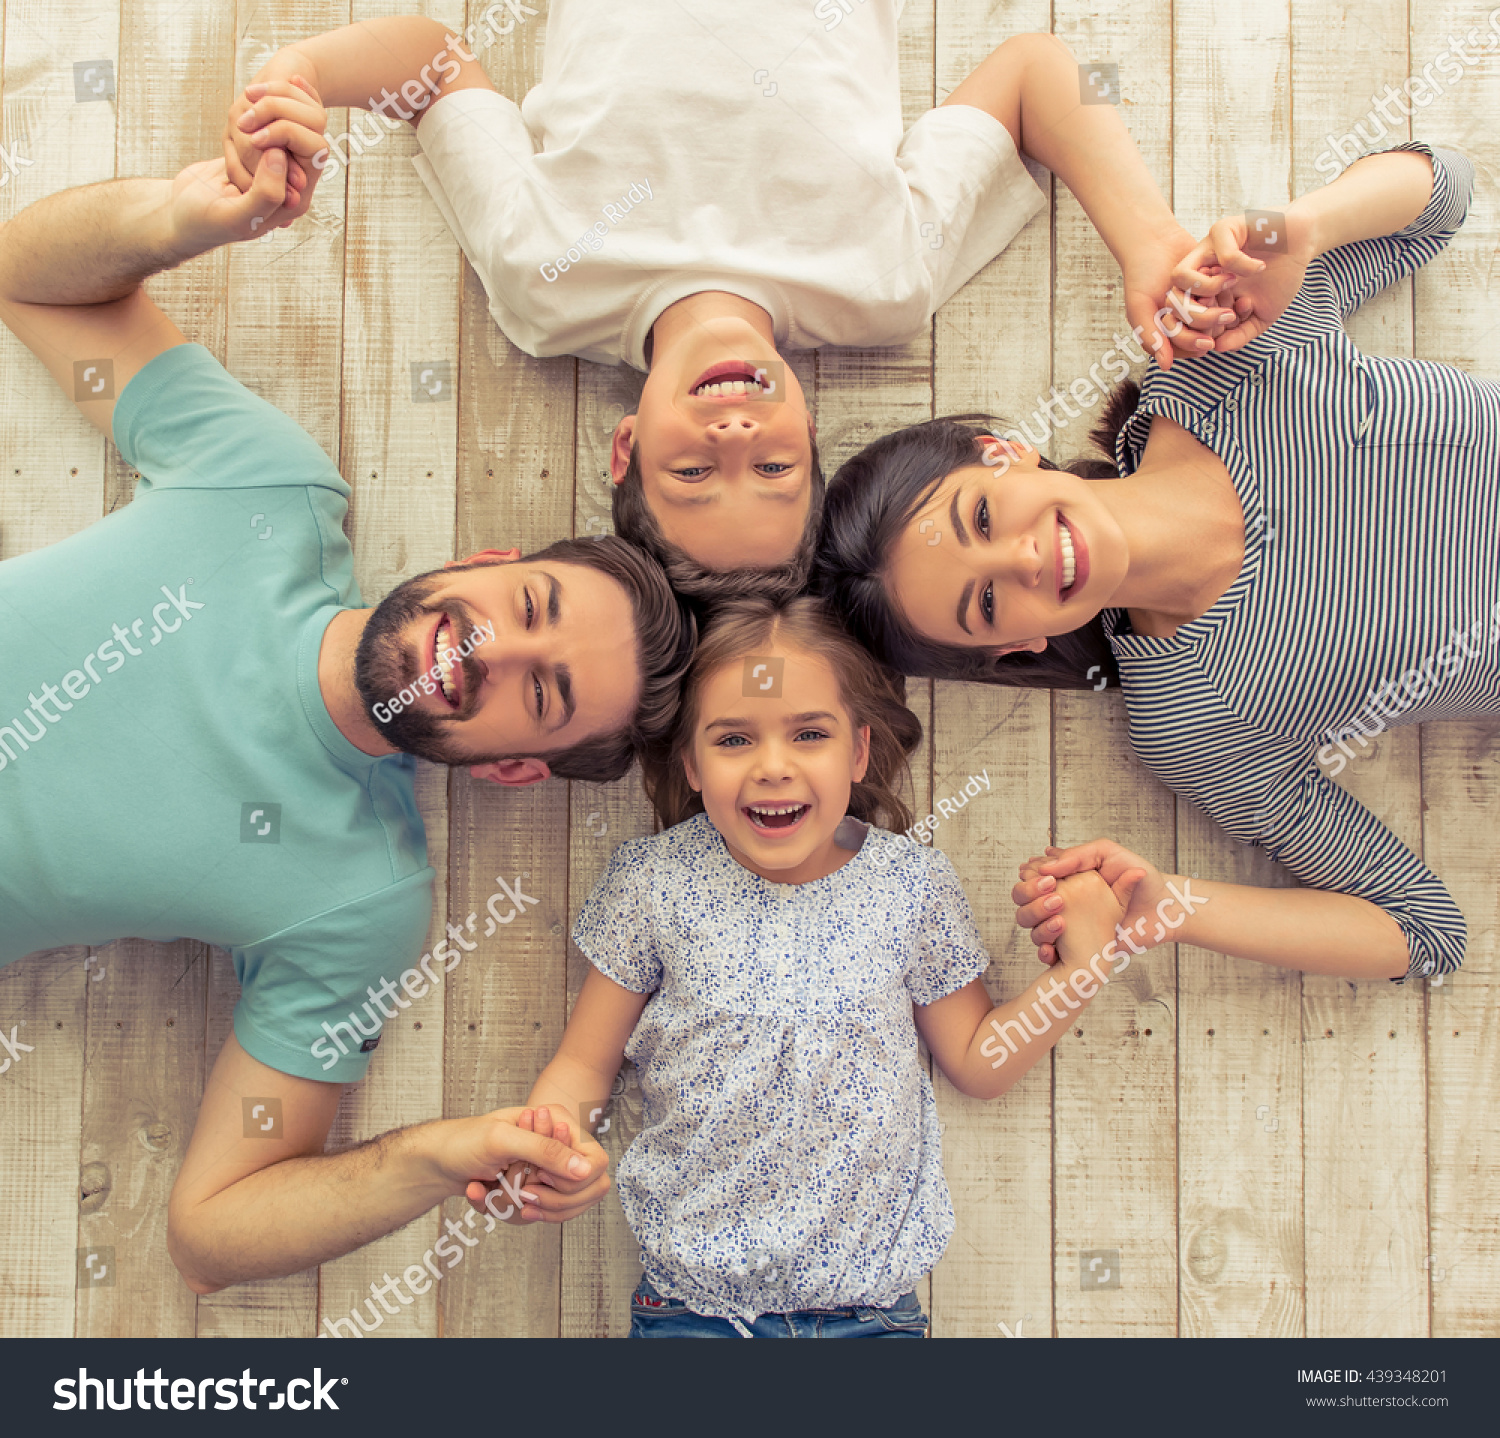 Сын и дочка вместе. Семья со счастливым ребёнком. Семейная фотосессия. Счастливые дети и родители. Гармоничная семья.